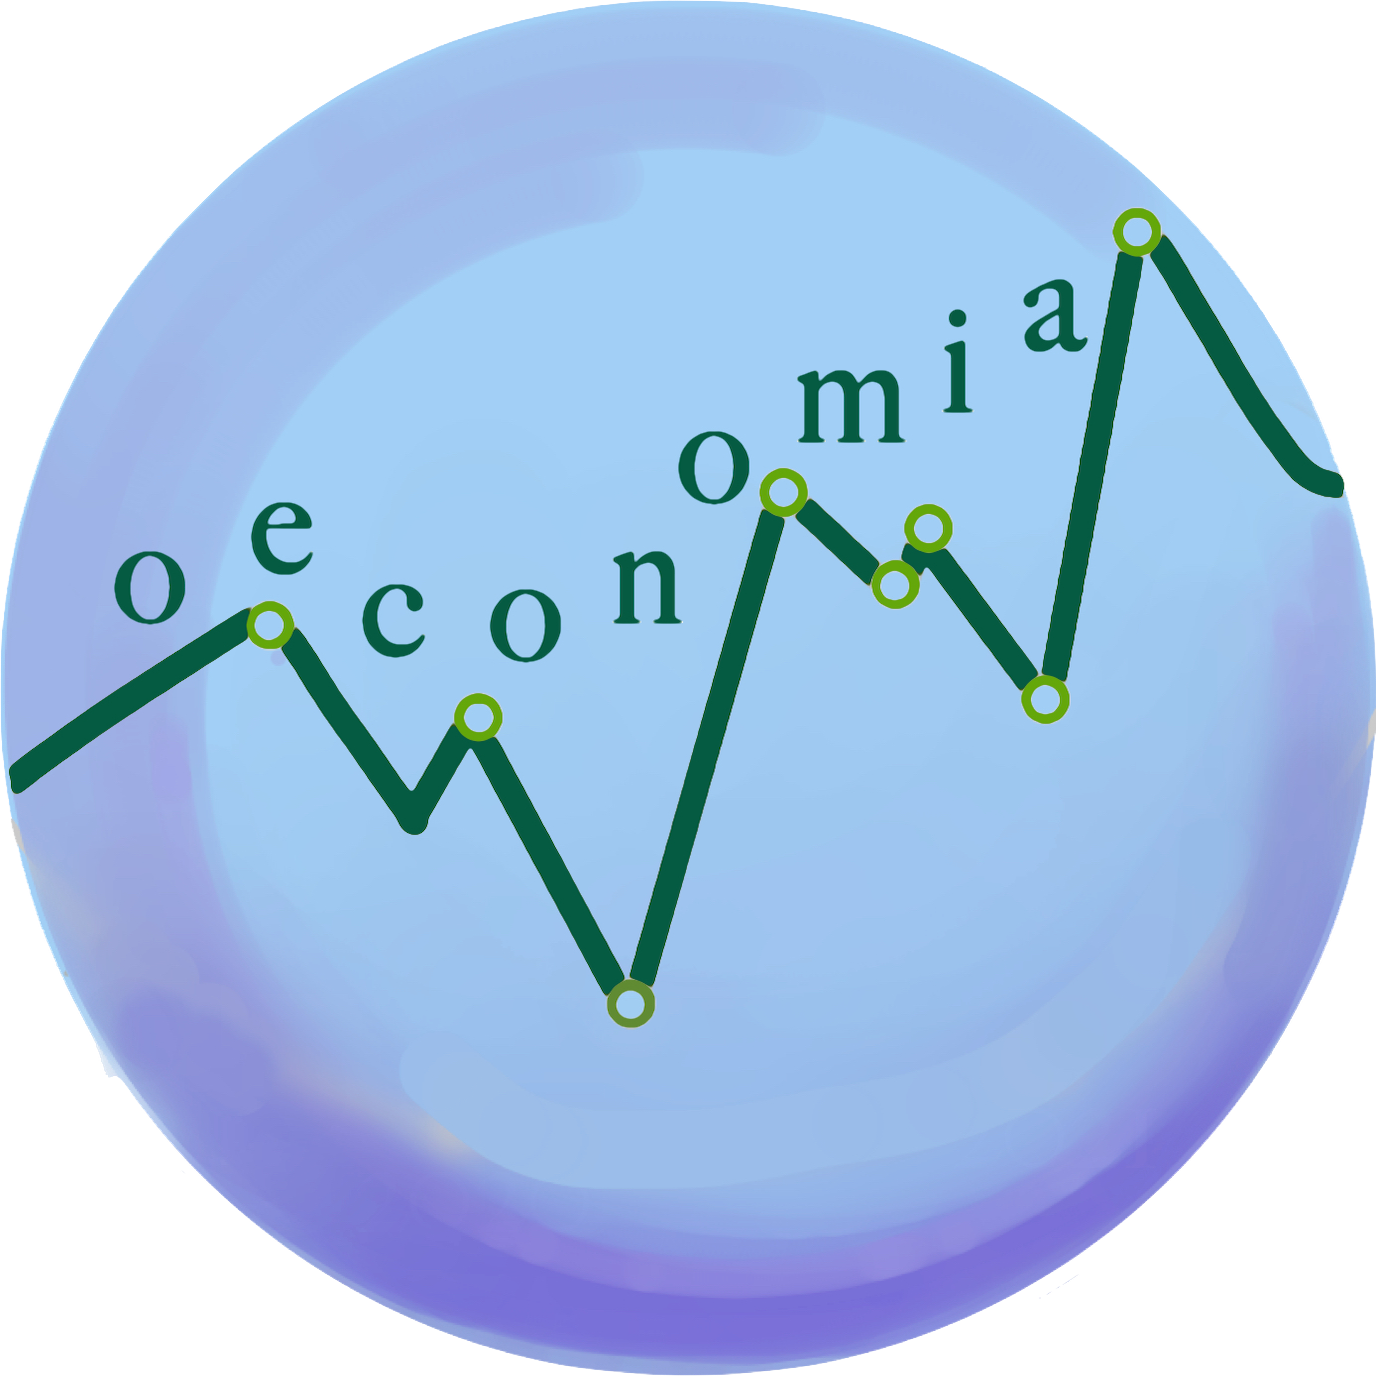 Harker Oeconomia